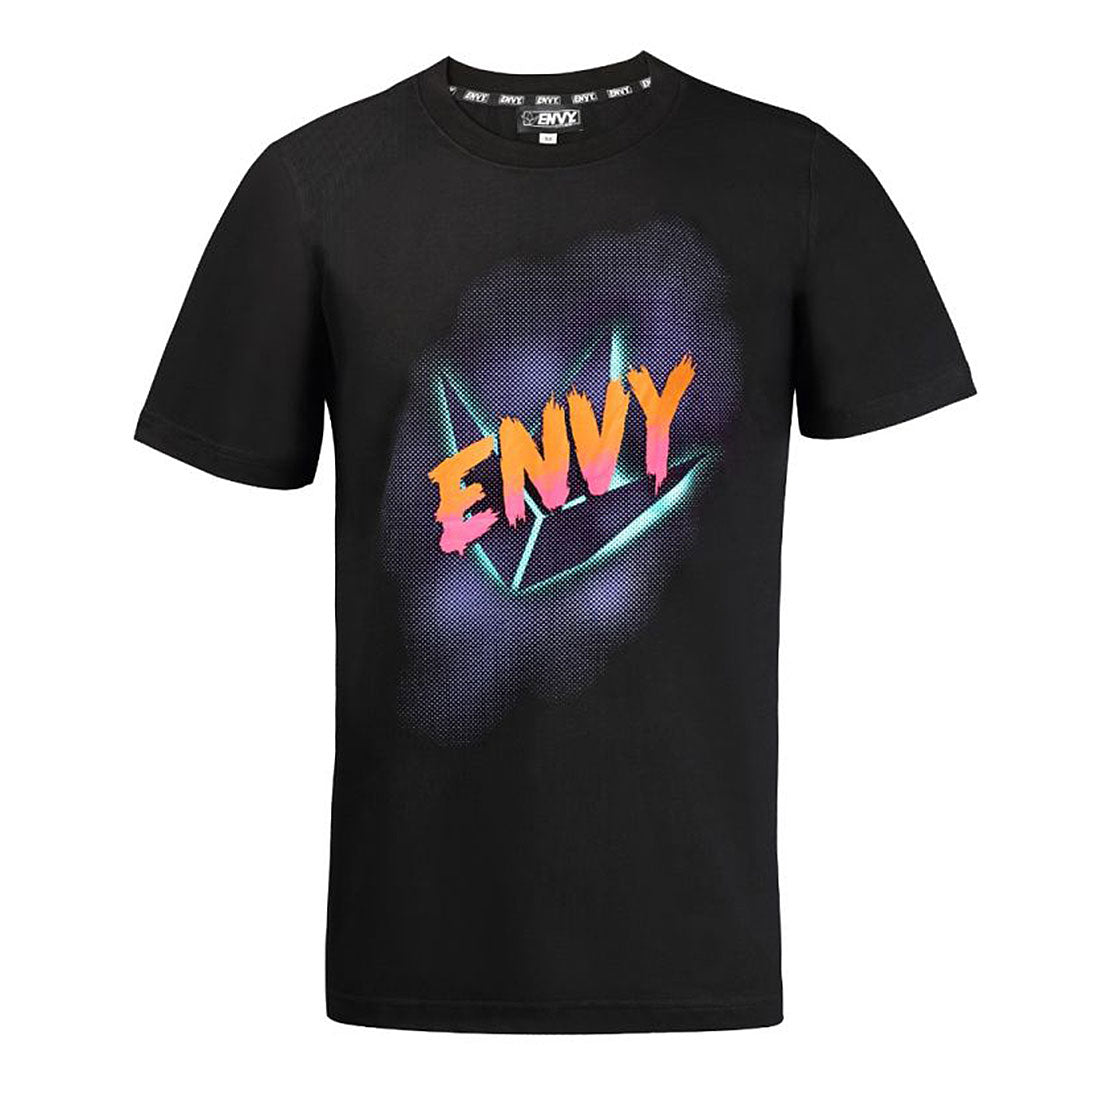 Envy Retro T-Shirt - Black Apparel Tshirts